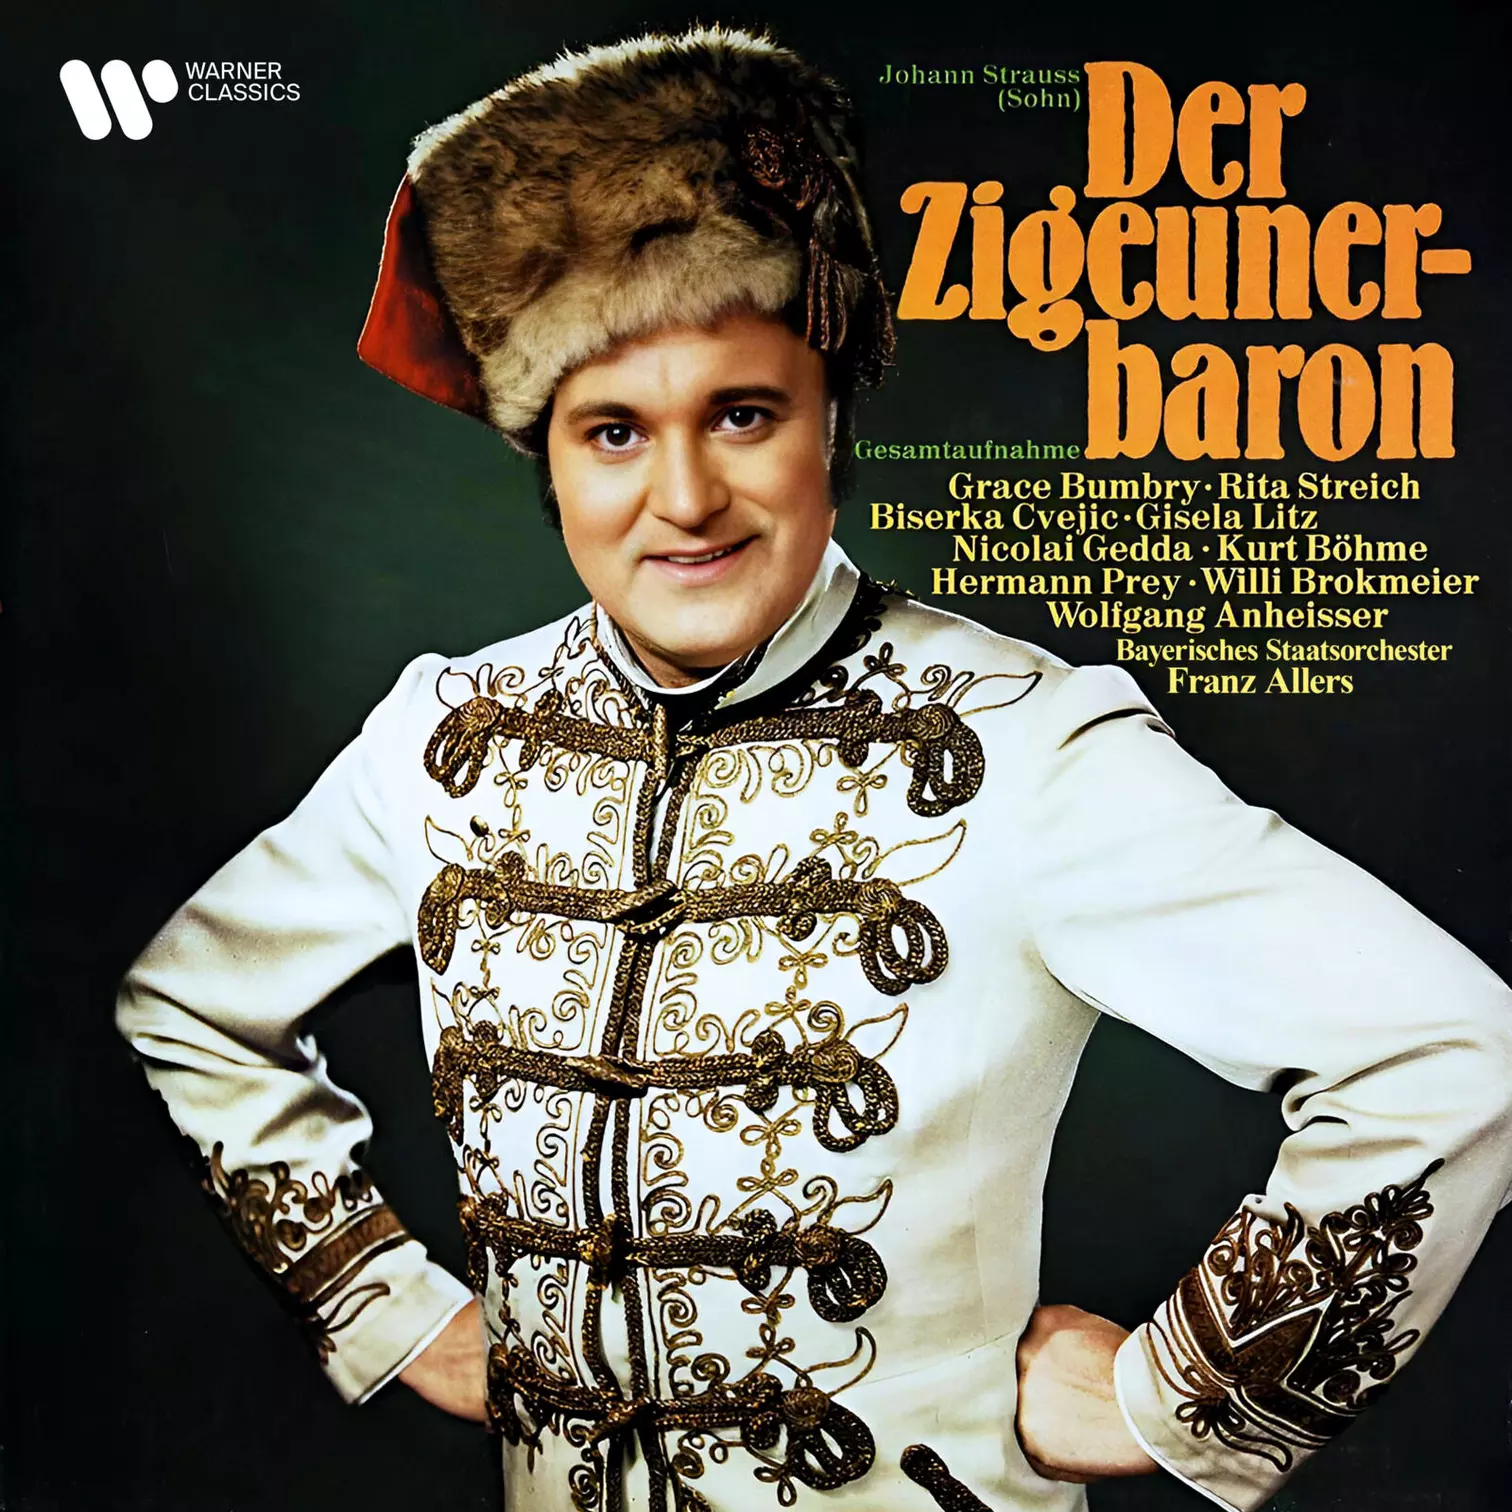 Grace Bumbry, Rita Streich, Nicolai Gedda, Bayerisches Staatsorchester & Franz Allers, Strauss: Der Zigeunerbaron